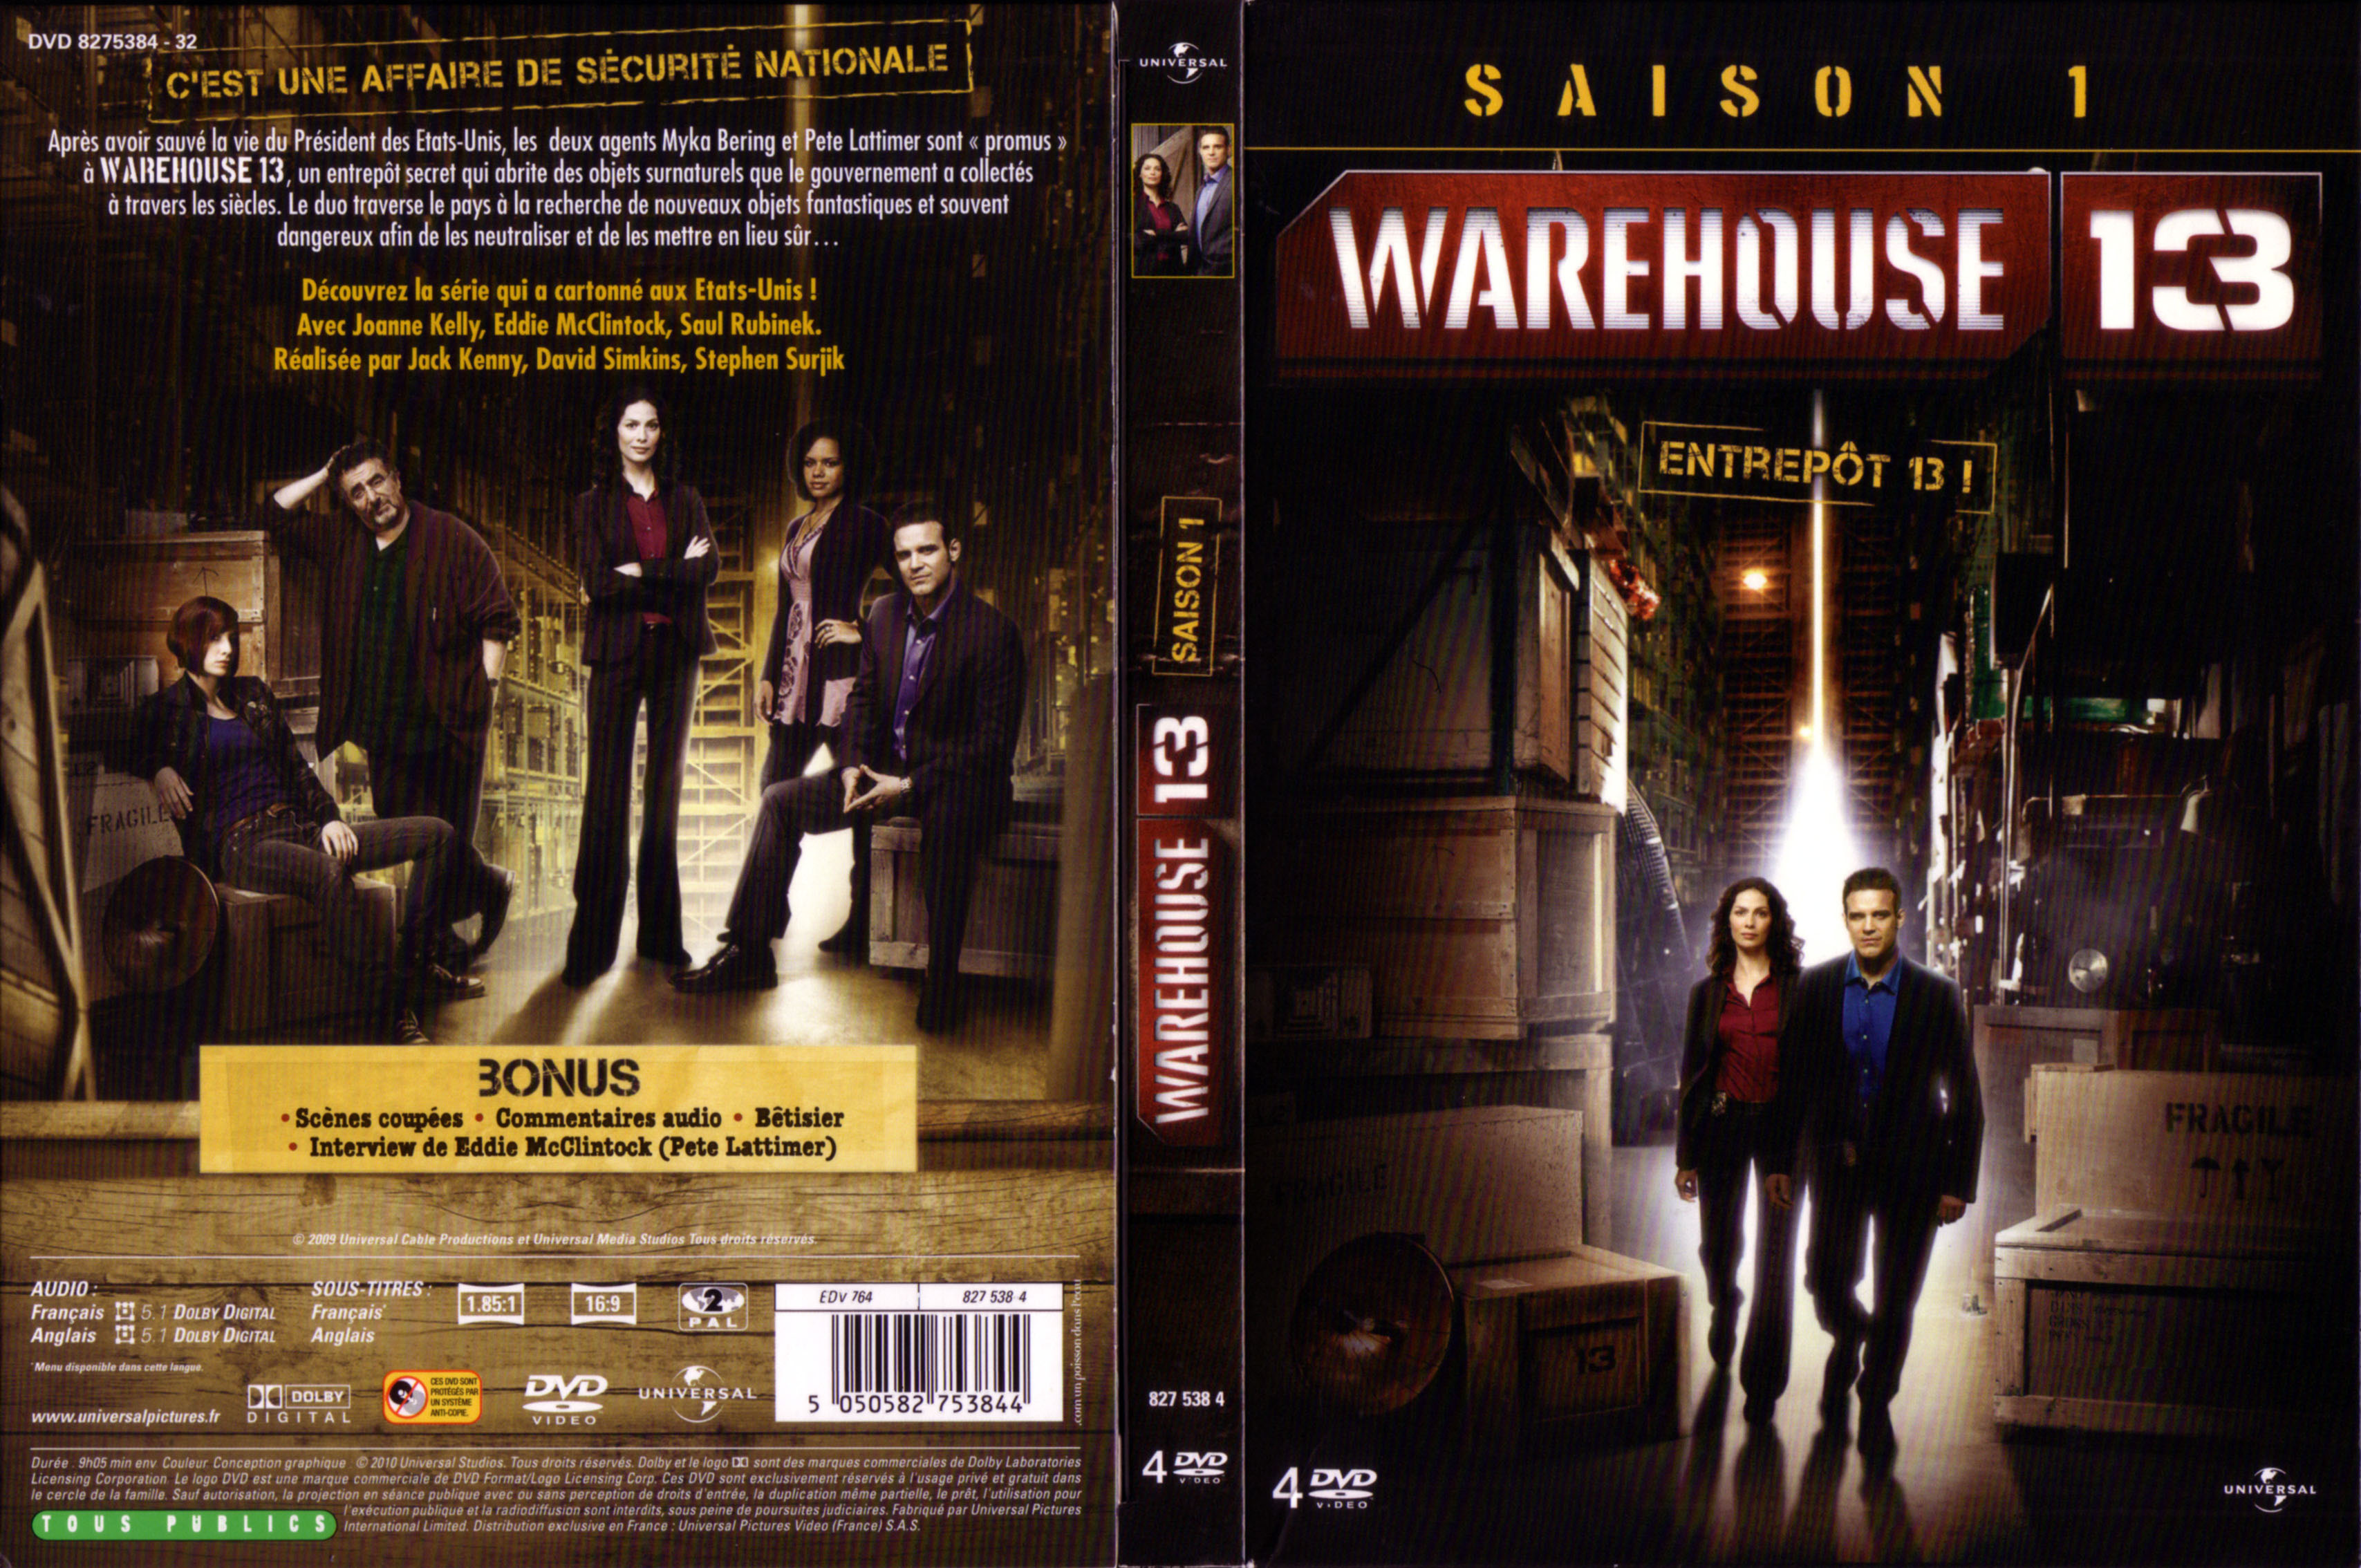 Jaquette DVD Warehouse 13 Saison 1.